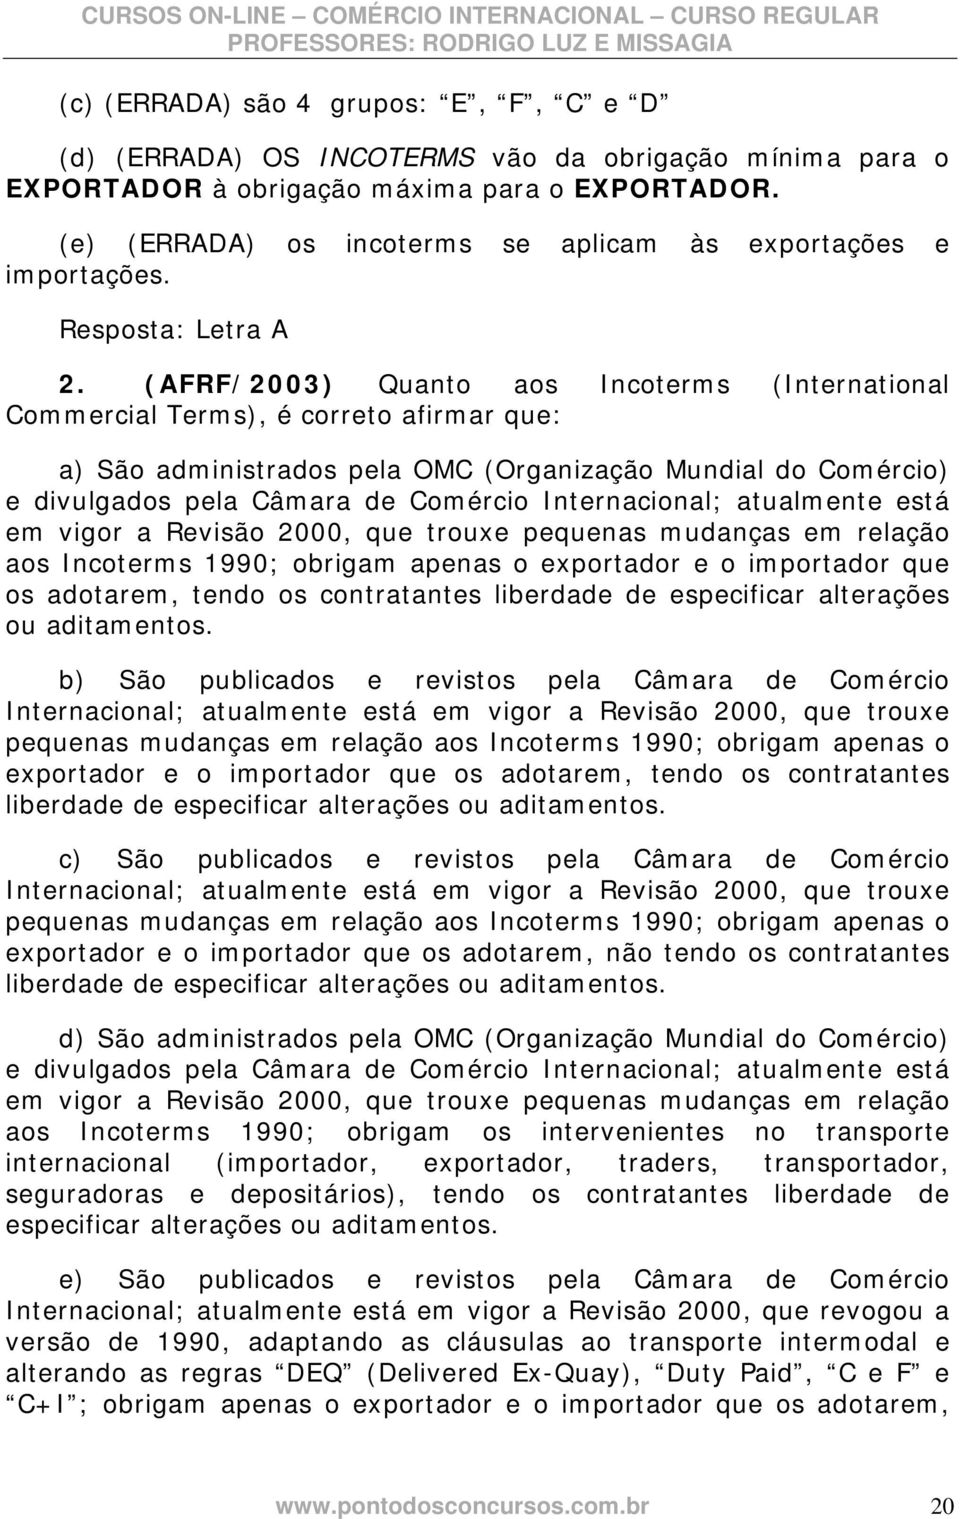 (AFRF/2003) Quanto aos Incoterms (International Commercial Terms), é correto afirmar que: a) São administrados pela OMC (Organização Mundial do Comércio) e divulgados pela Câmara de Comércio